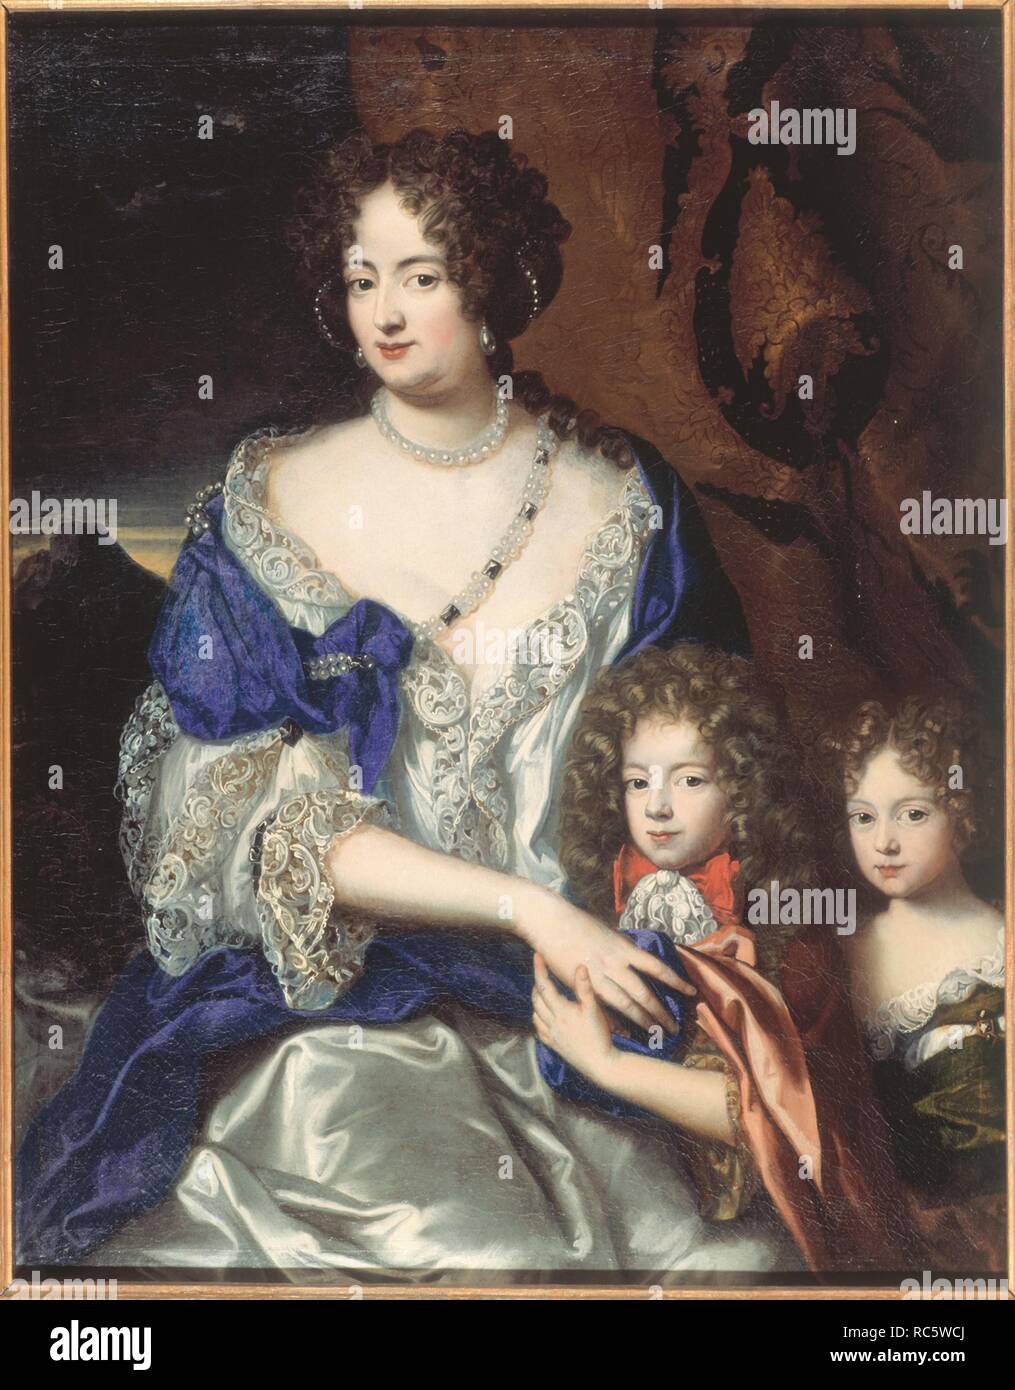 Herzogin Sophia Dorothea von Braunschweig und Lüneburg mit ihren Kindern George und Sophia Dorothea. Museum: Bomann Museum Celle. Autor: JACQUES VAILLANT. Stockfoto